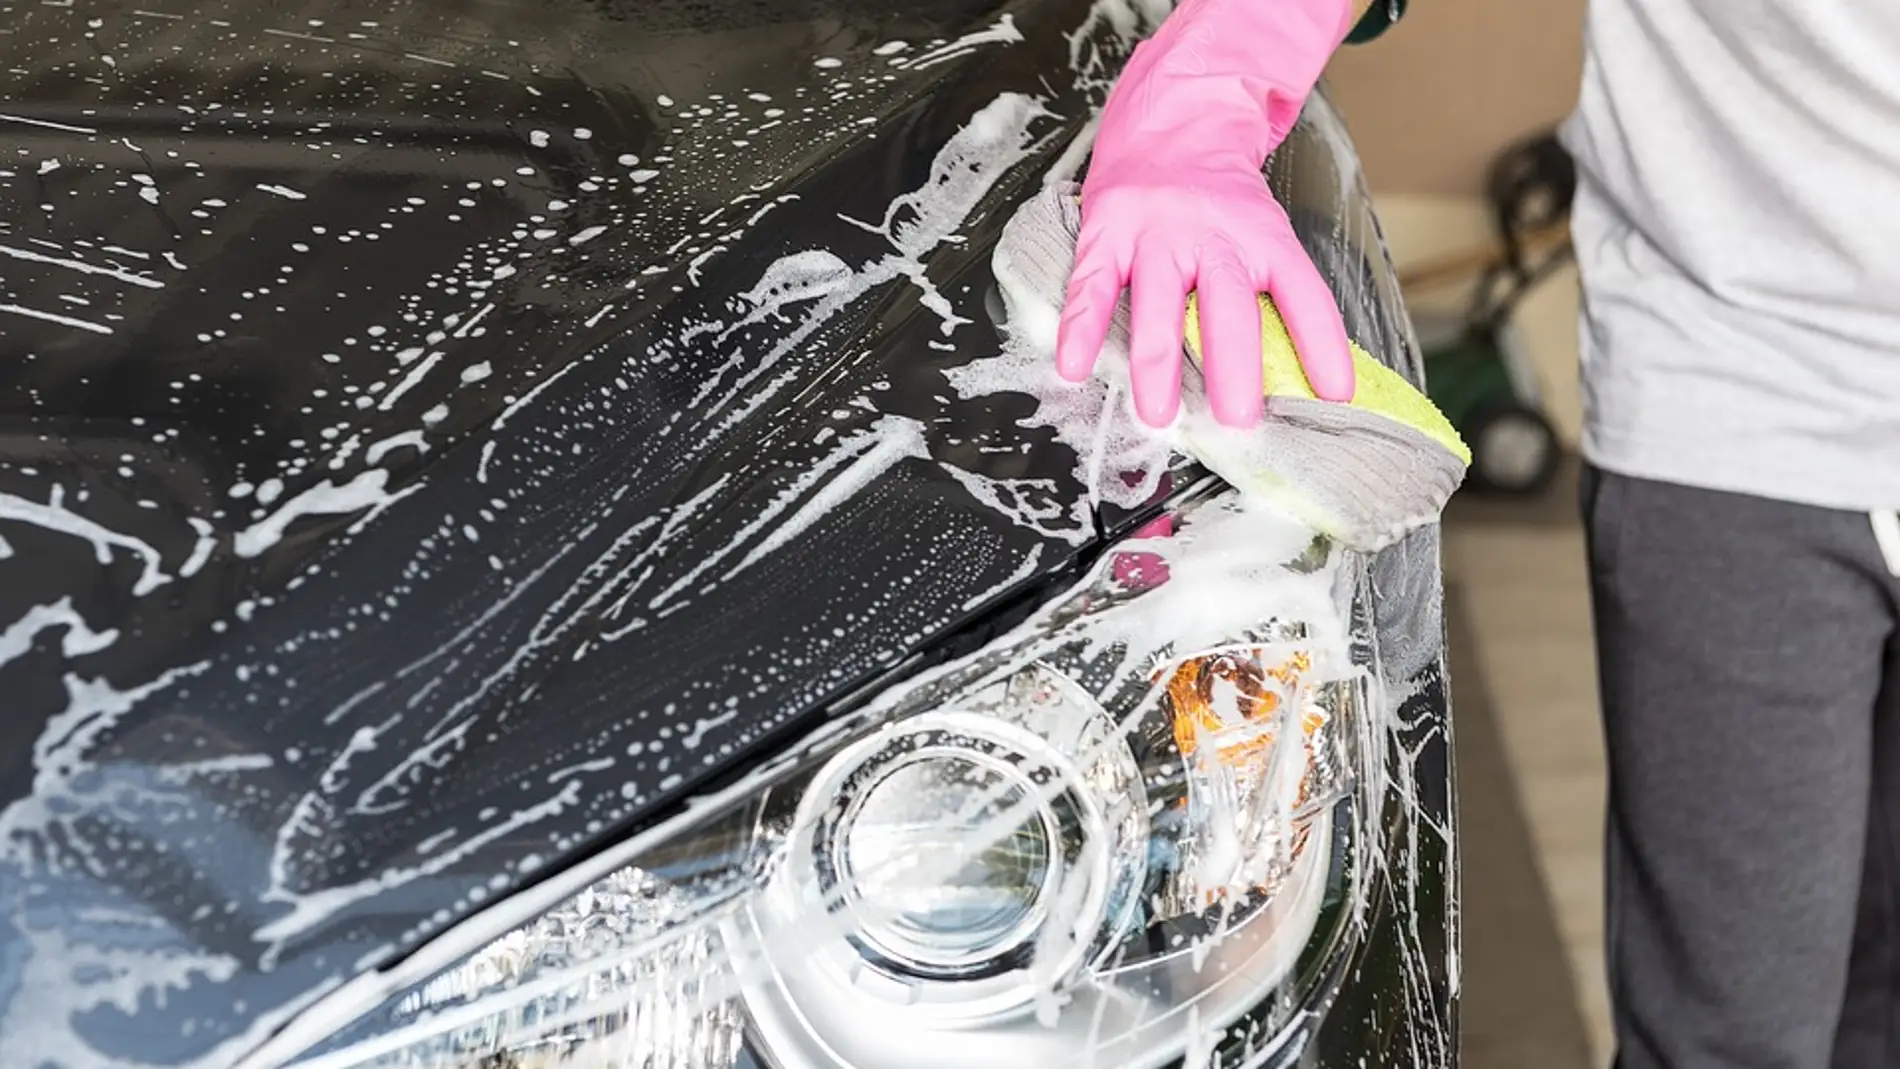 COVID-19: limpiar el coche con jabón neutro y no lejía, entre las